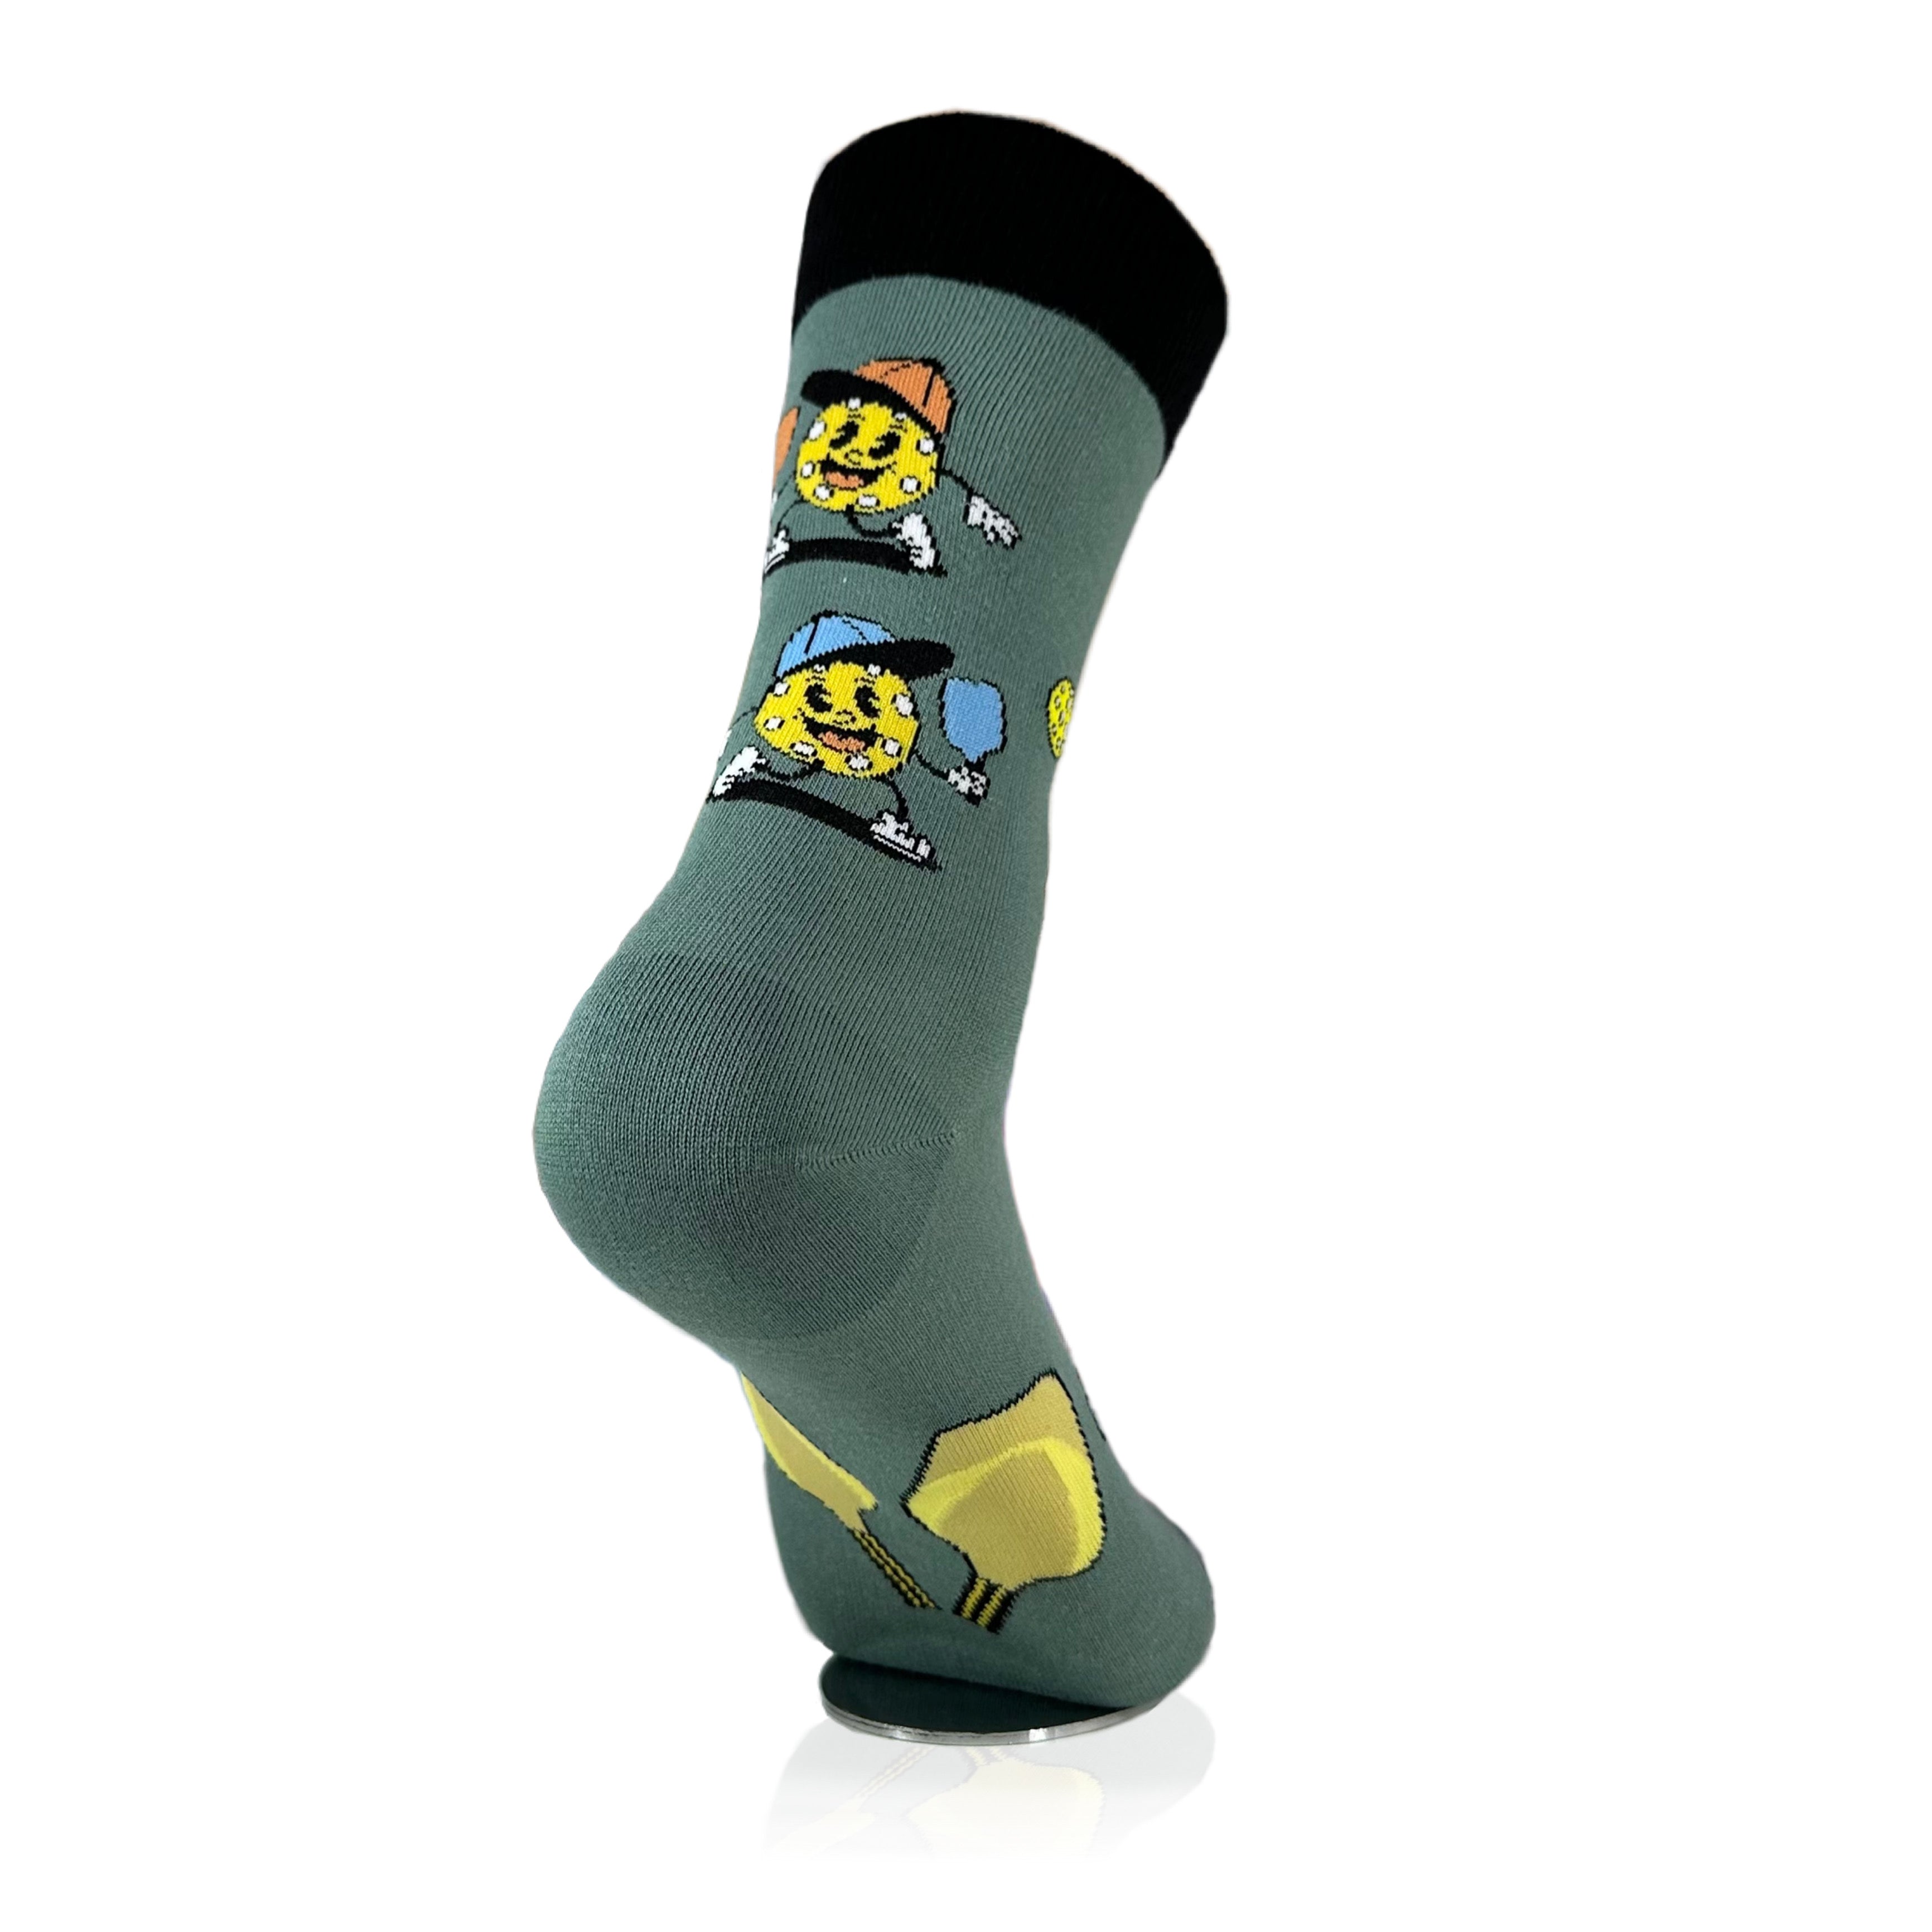 Pickleball Socks from the Sock Panda